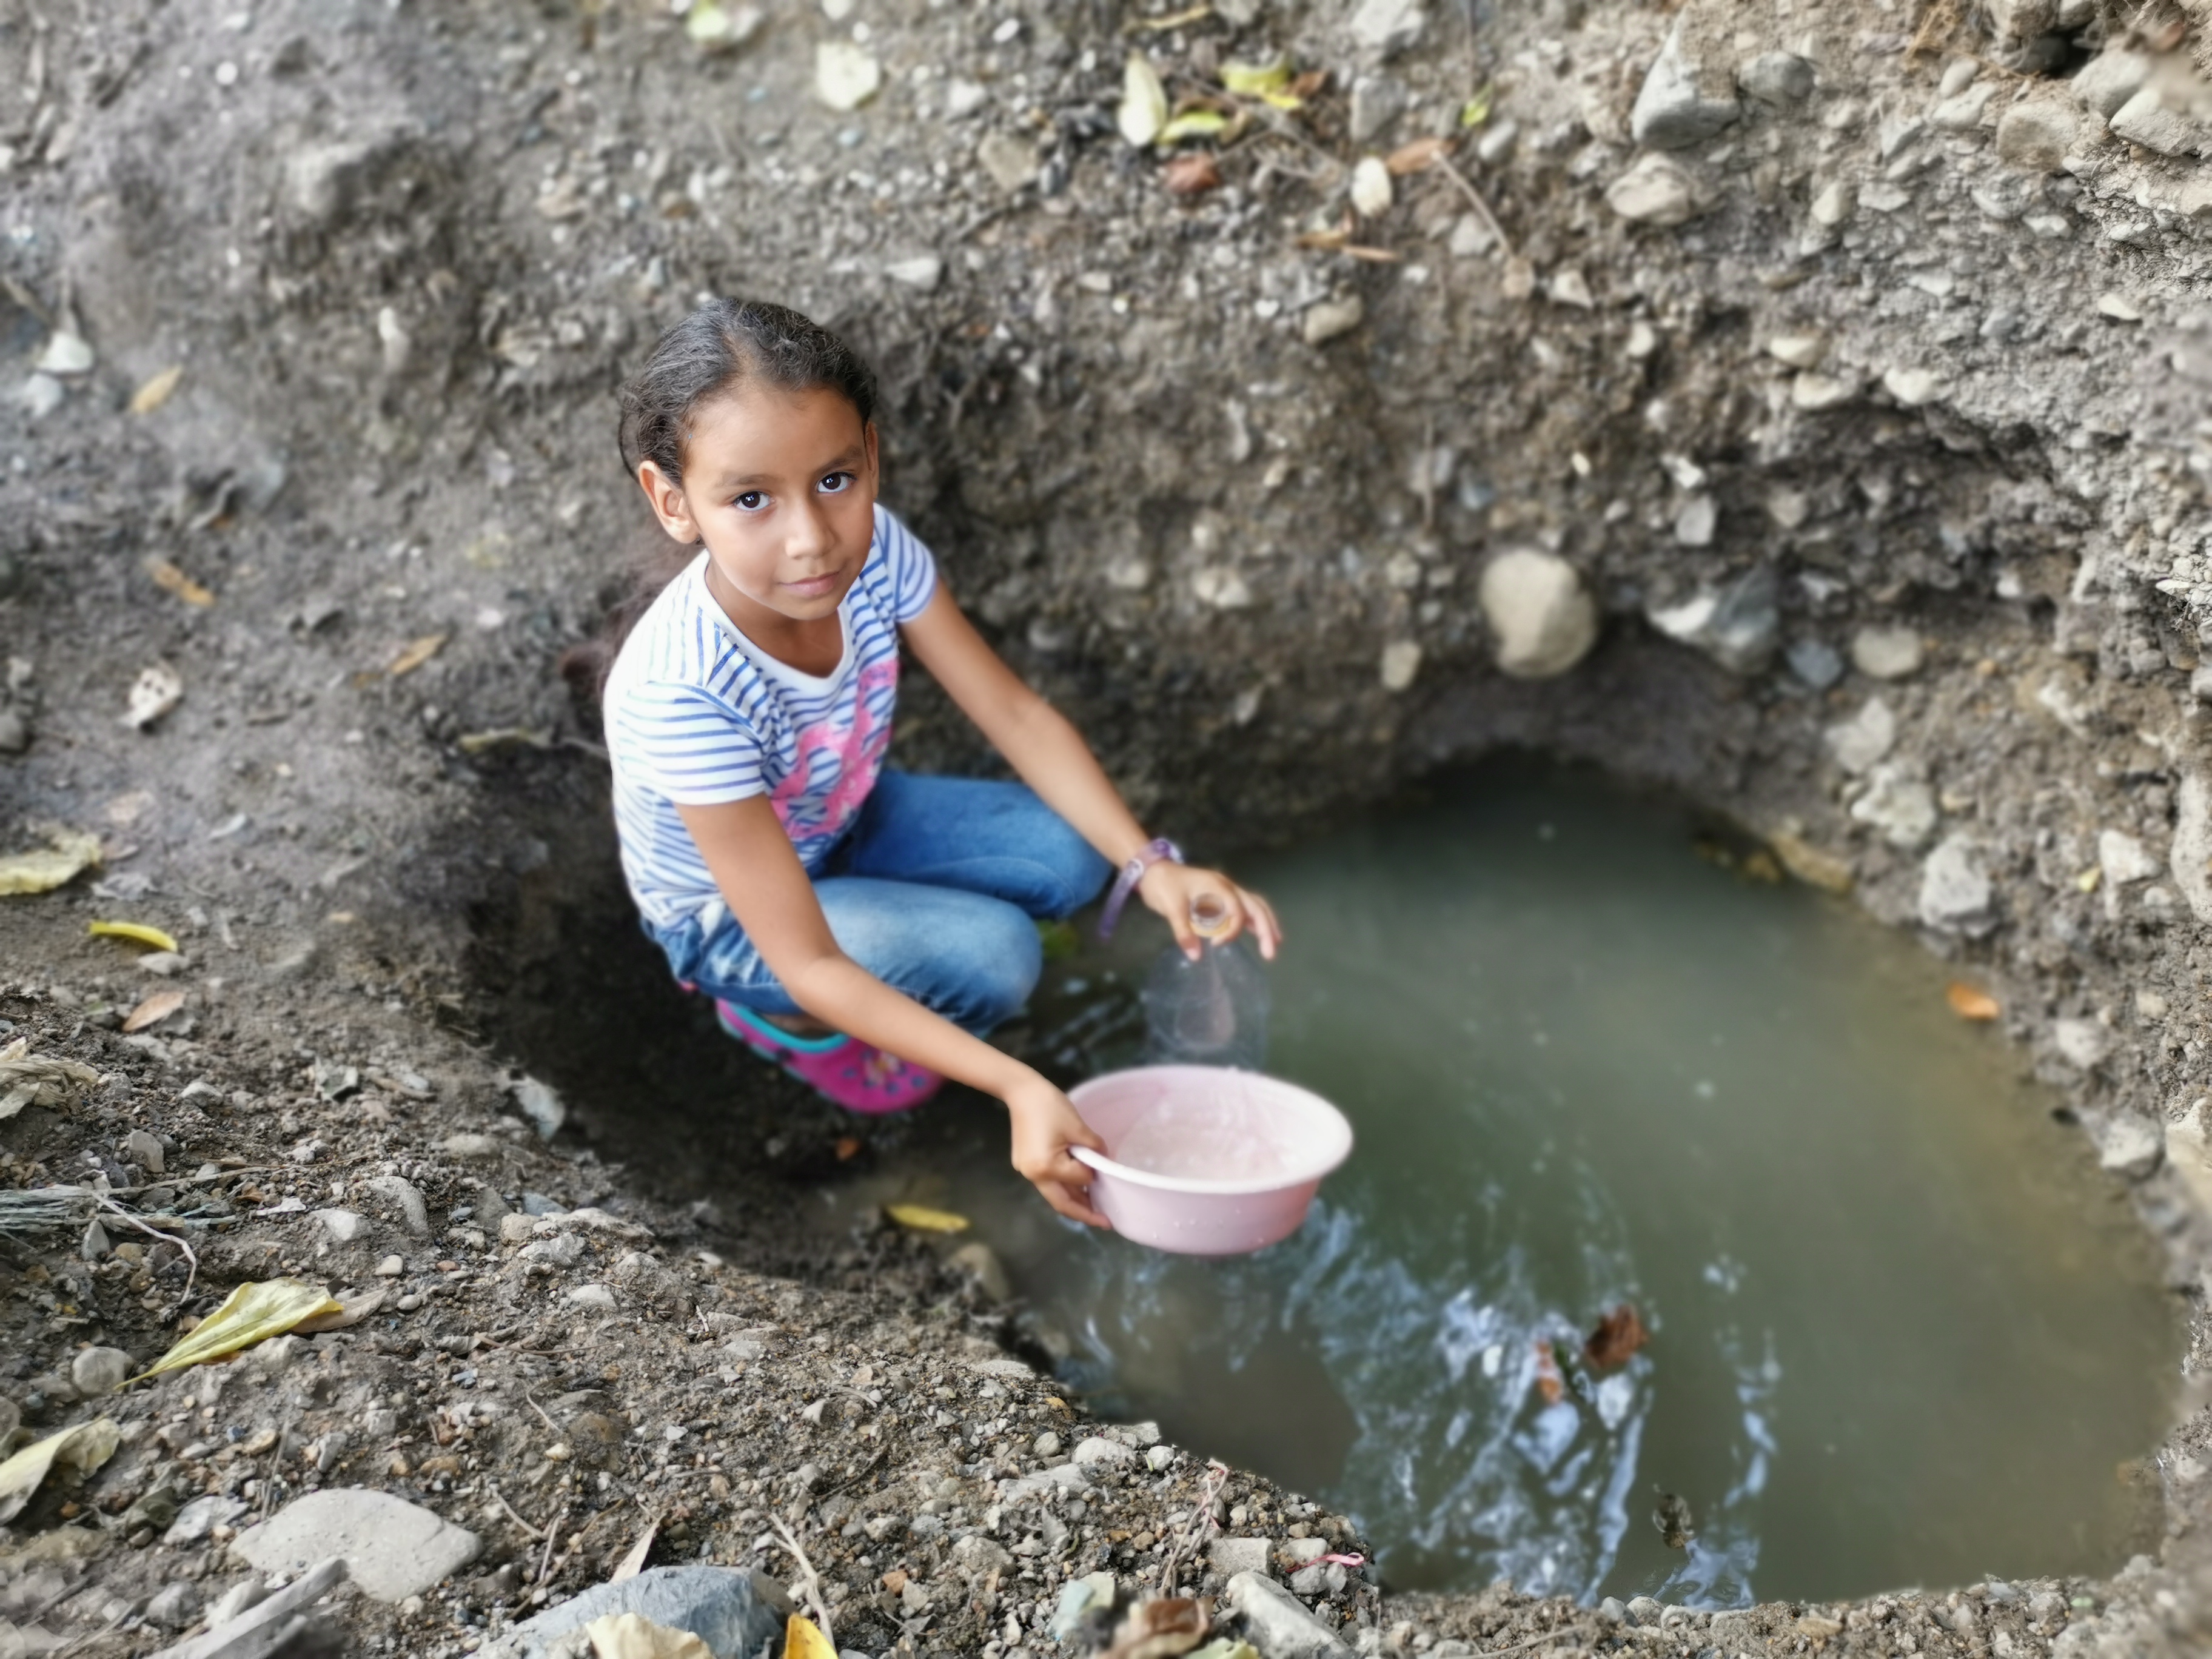 Eliana recogiendo agua antes de que en su comunidad haya agua segura